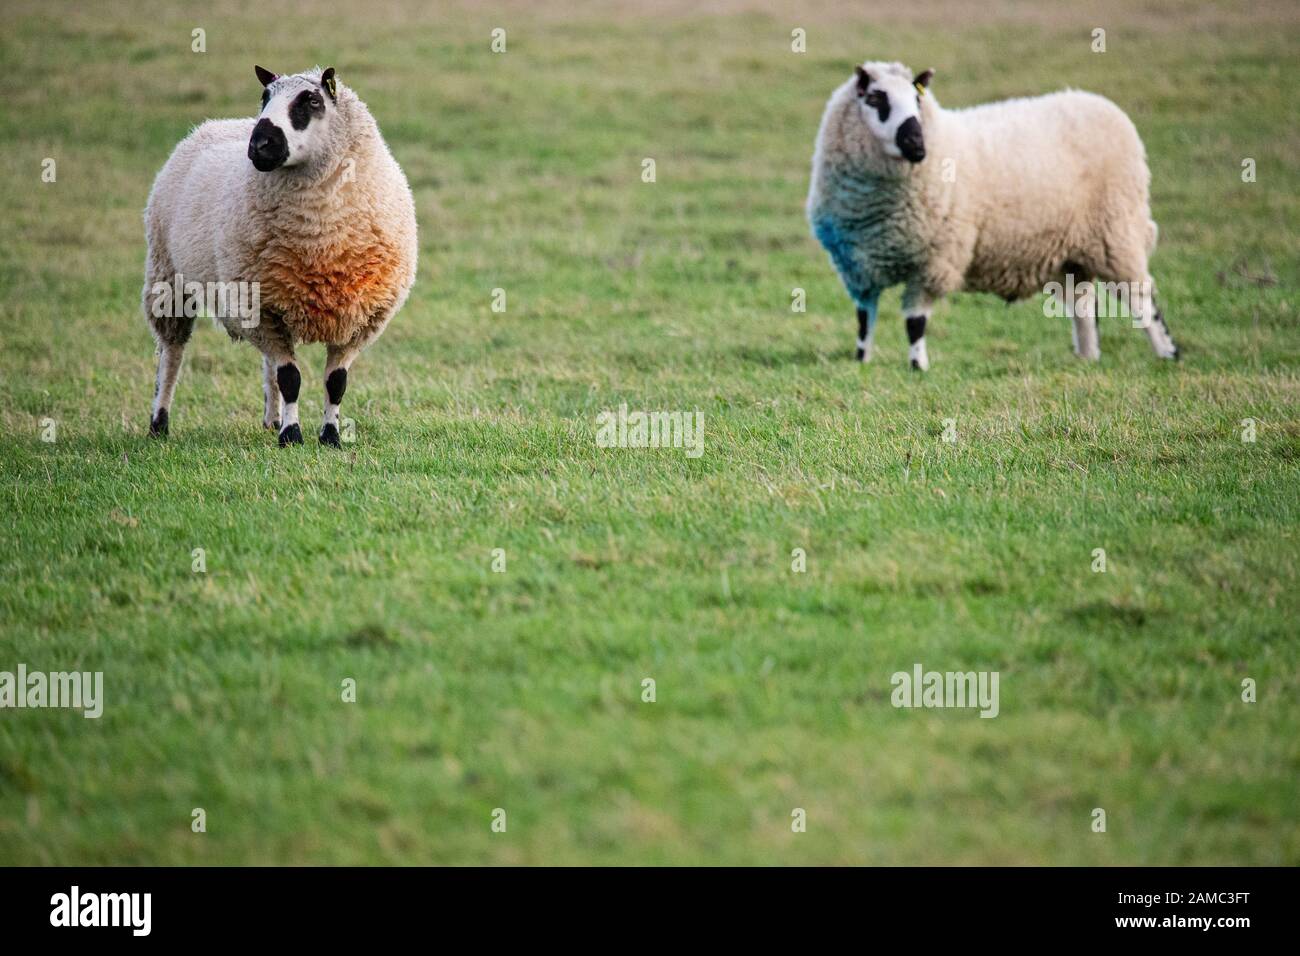 Due Pecore Kerry Hill in un campo nel Kent. C'è spazio di copia nella parte inferiore dell'immagine. Ottengono il loro nome dal villaggio denominato Kerry. Foto Stock